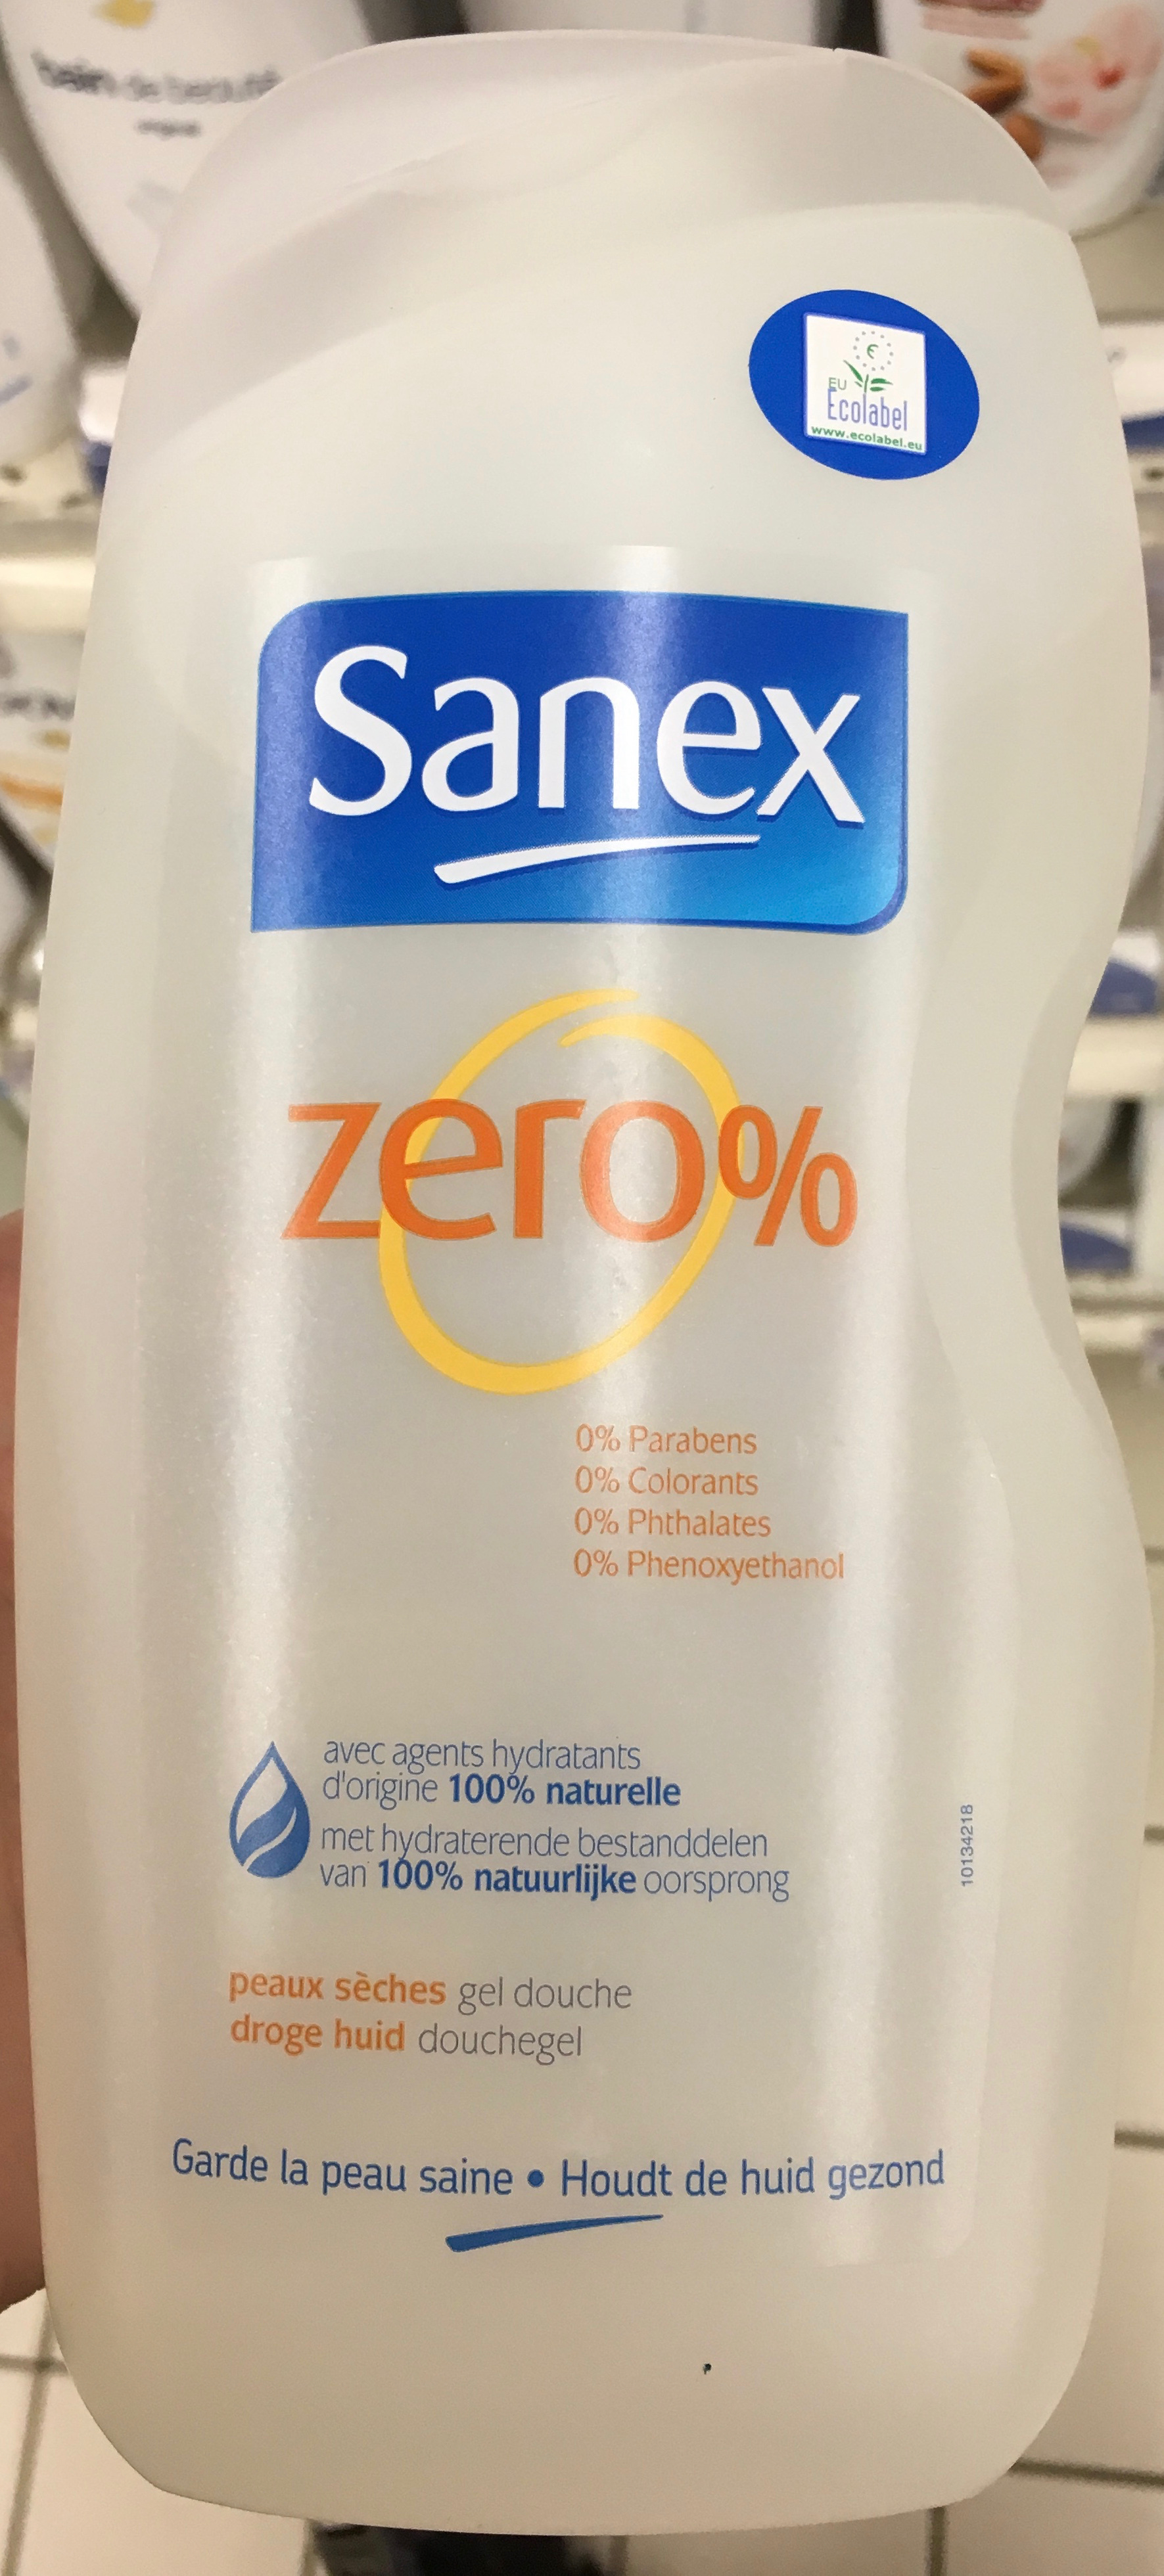 Zero % Gel douche peaux sèches - Product - fr